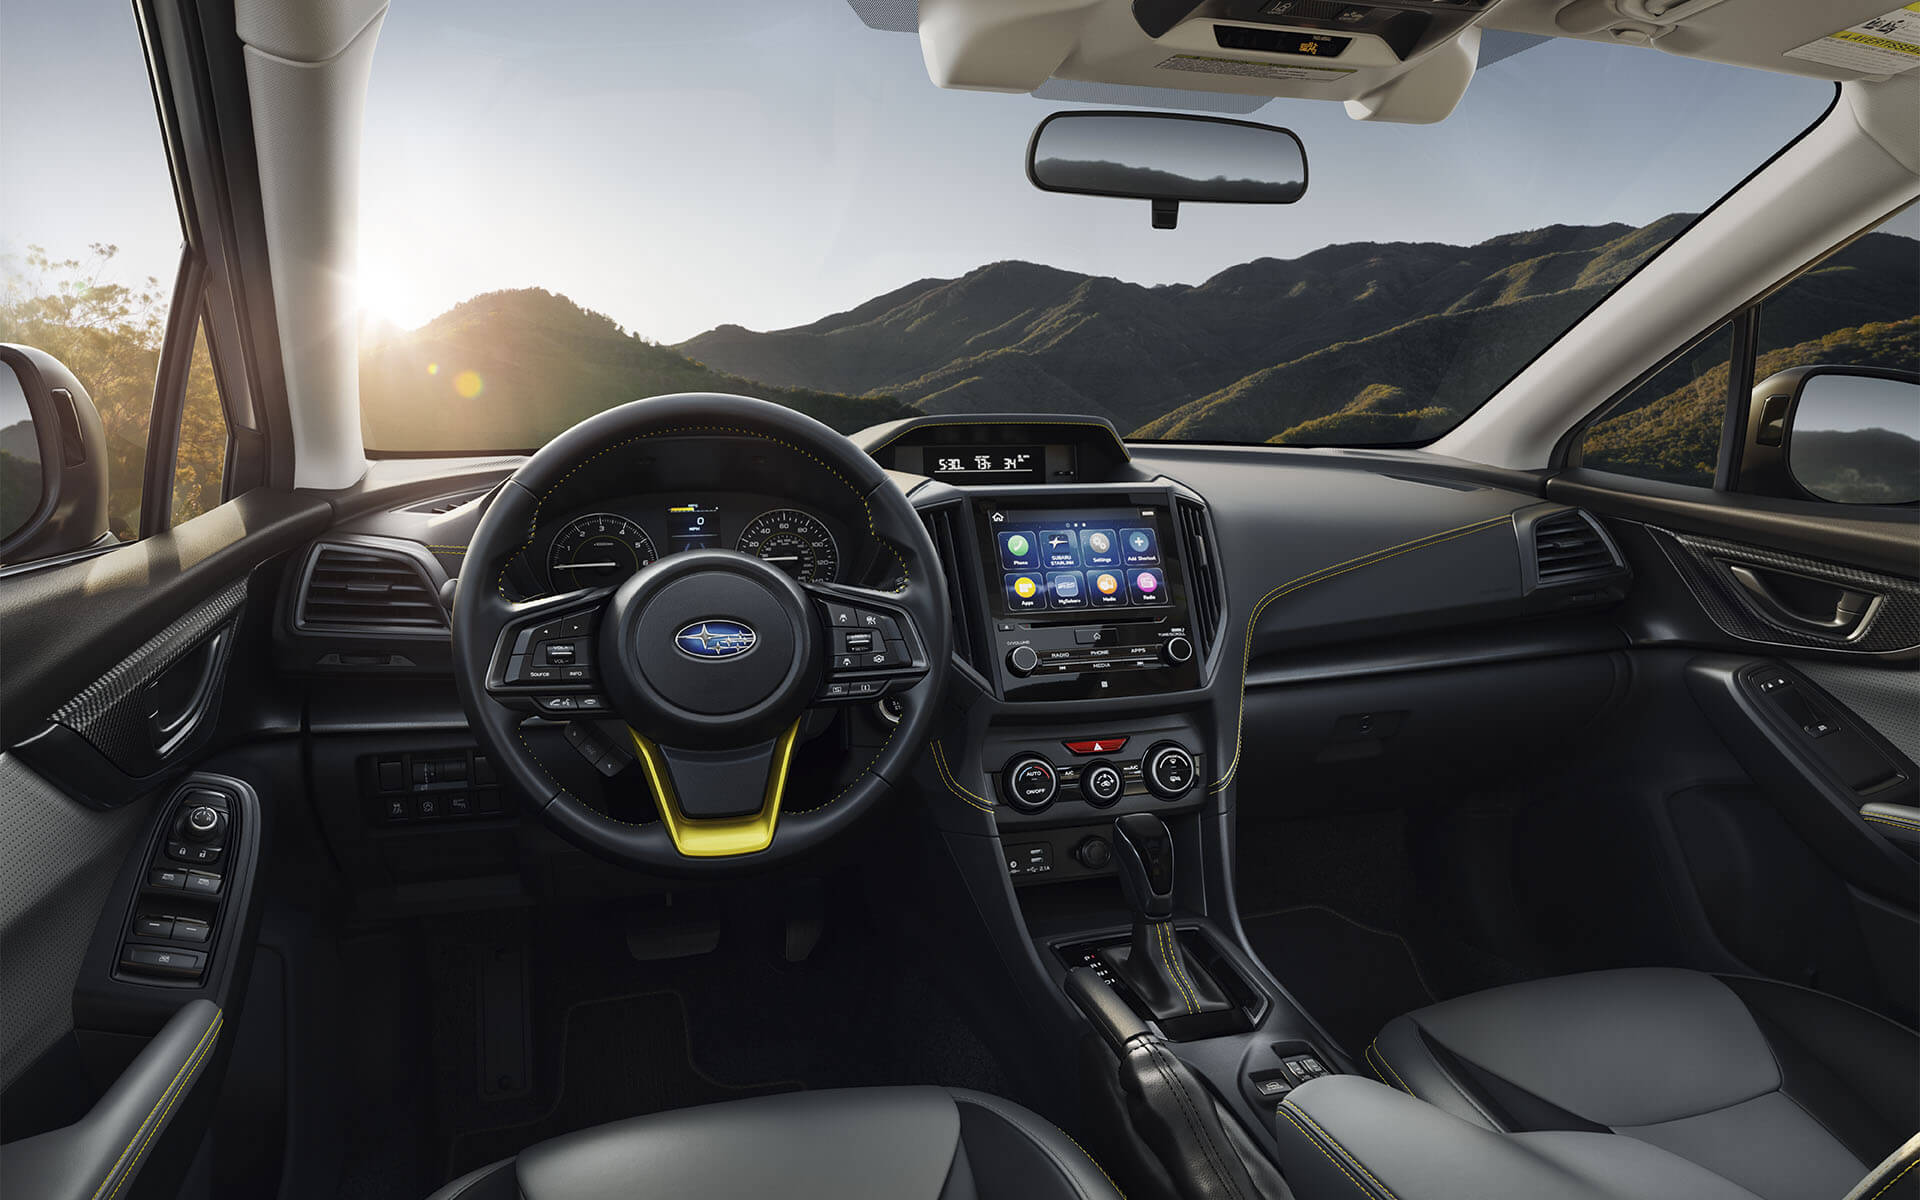 The dashboard and steering wheel of the Subaru Crosstrek Sport